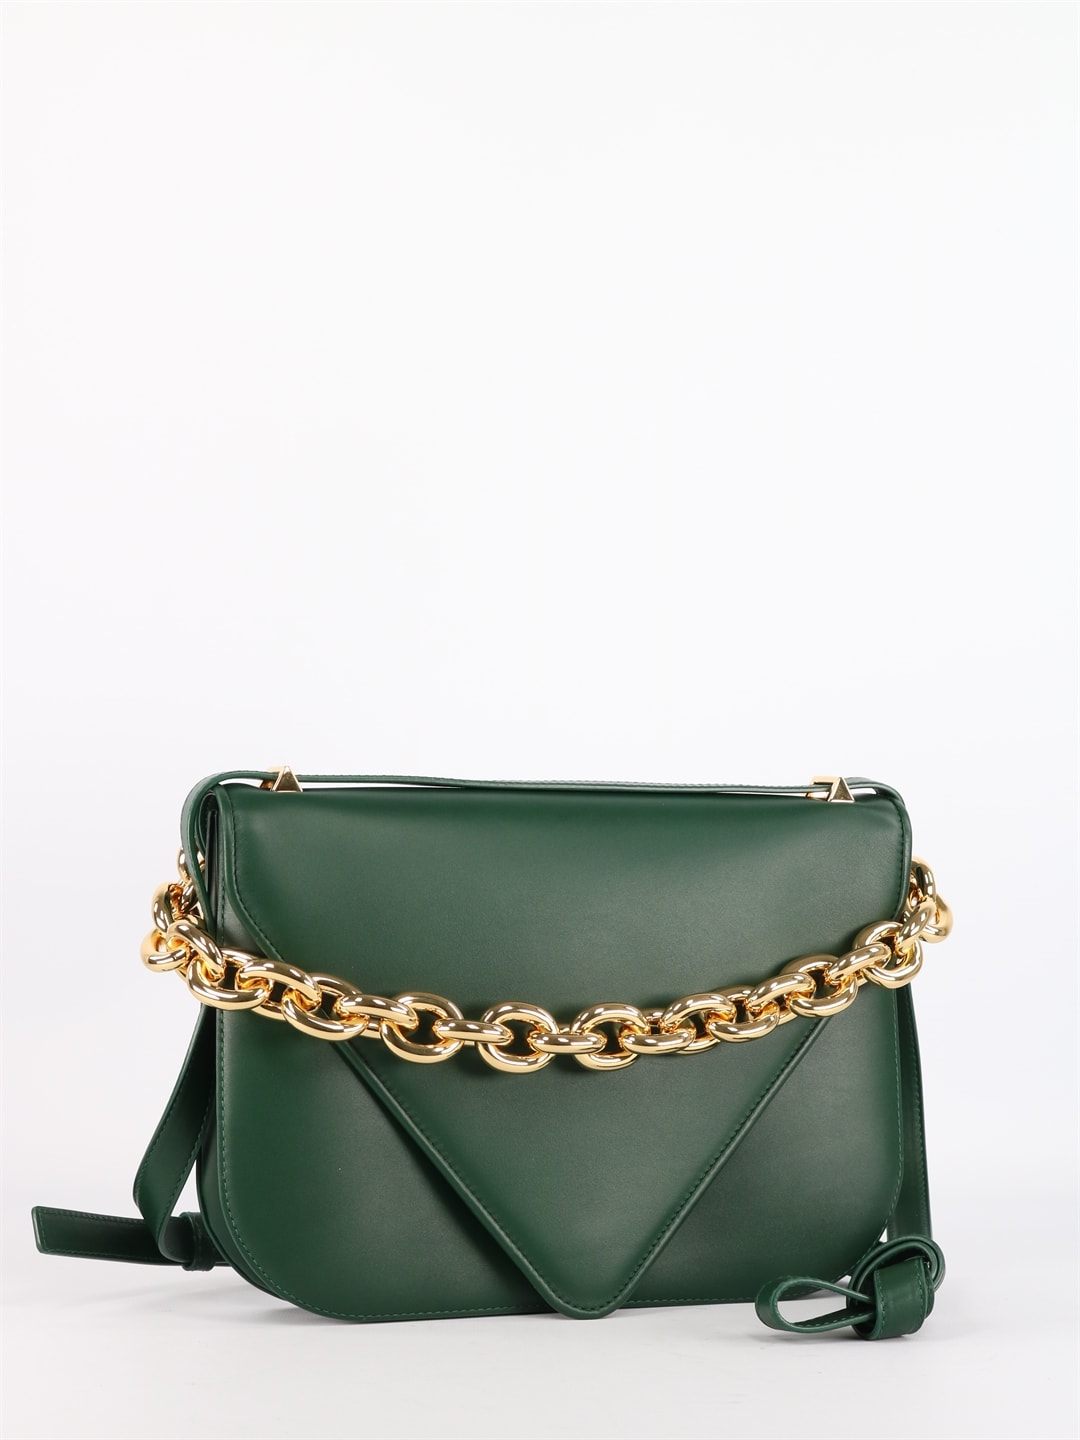 Bottega Veneta Mount Medium Green Bag